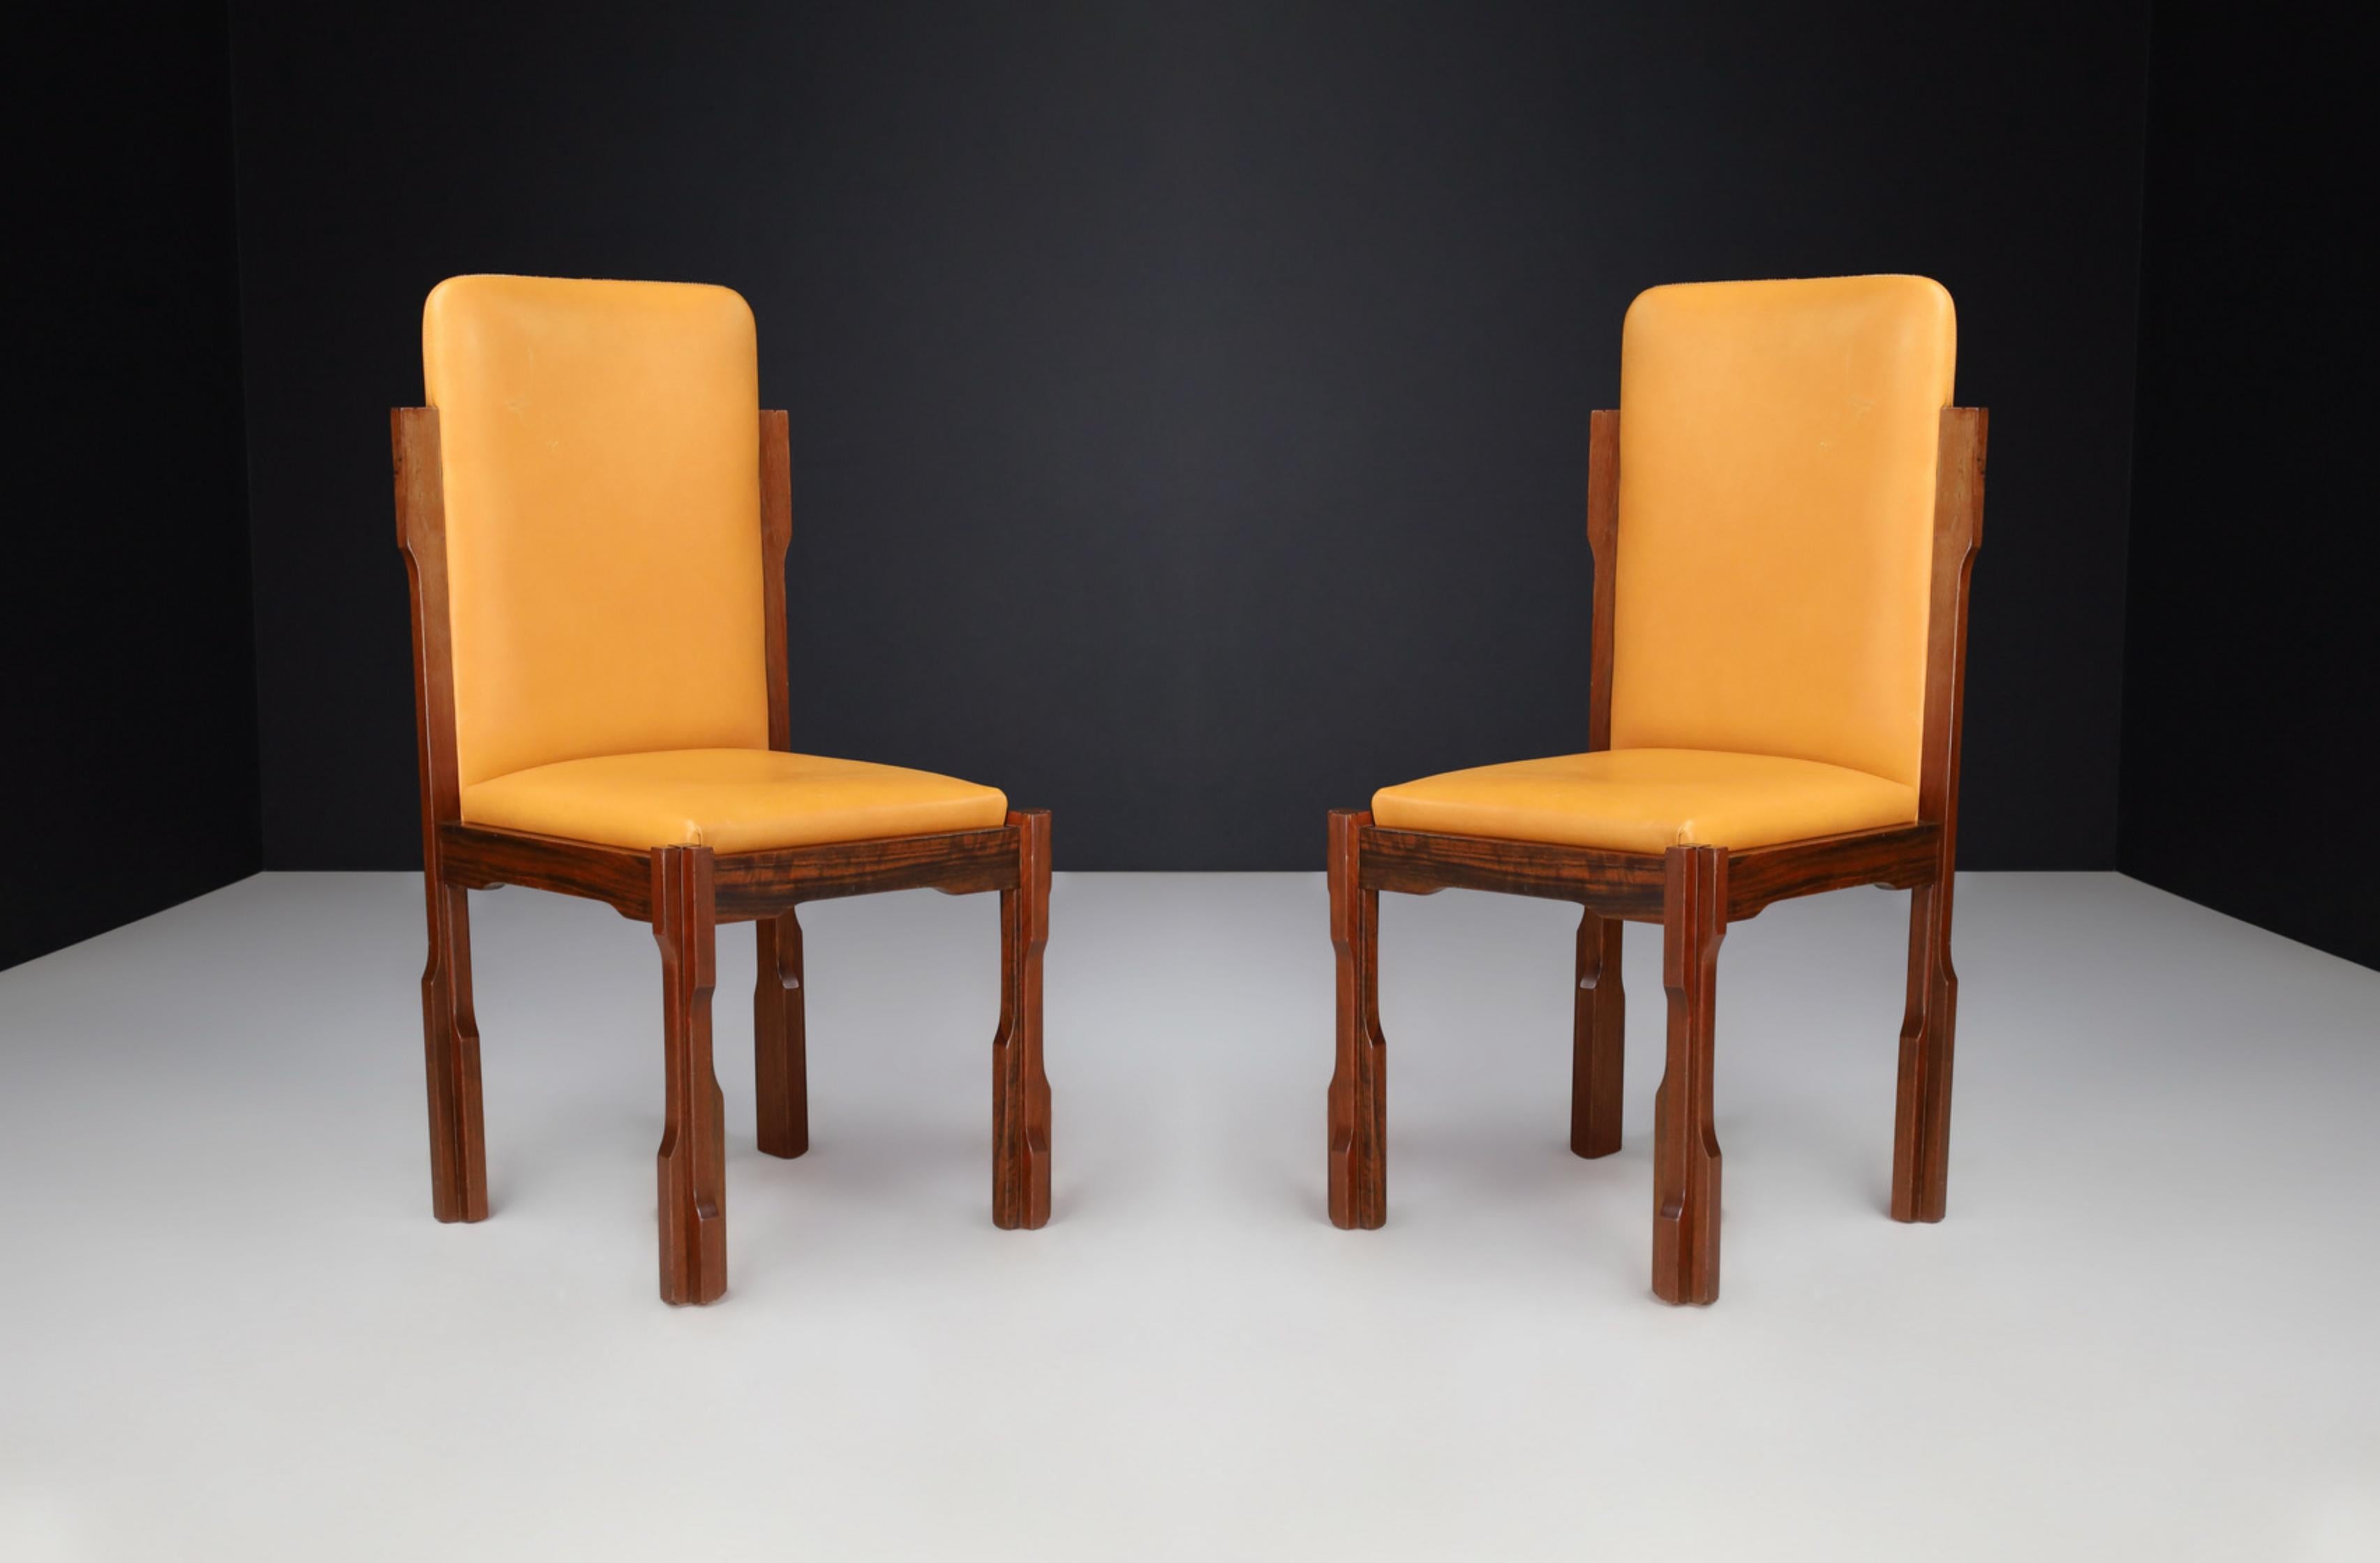 Luciano Frigerio Schreibtischstühle aus Nussbaum und Leder, Italien 1970er Jahre

Diese Stühle gehören zur Serie 